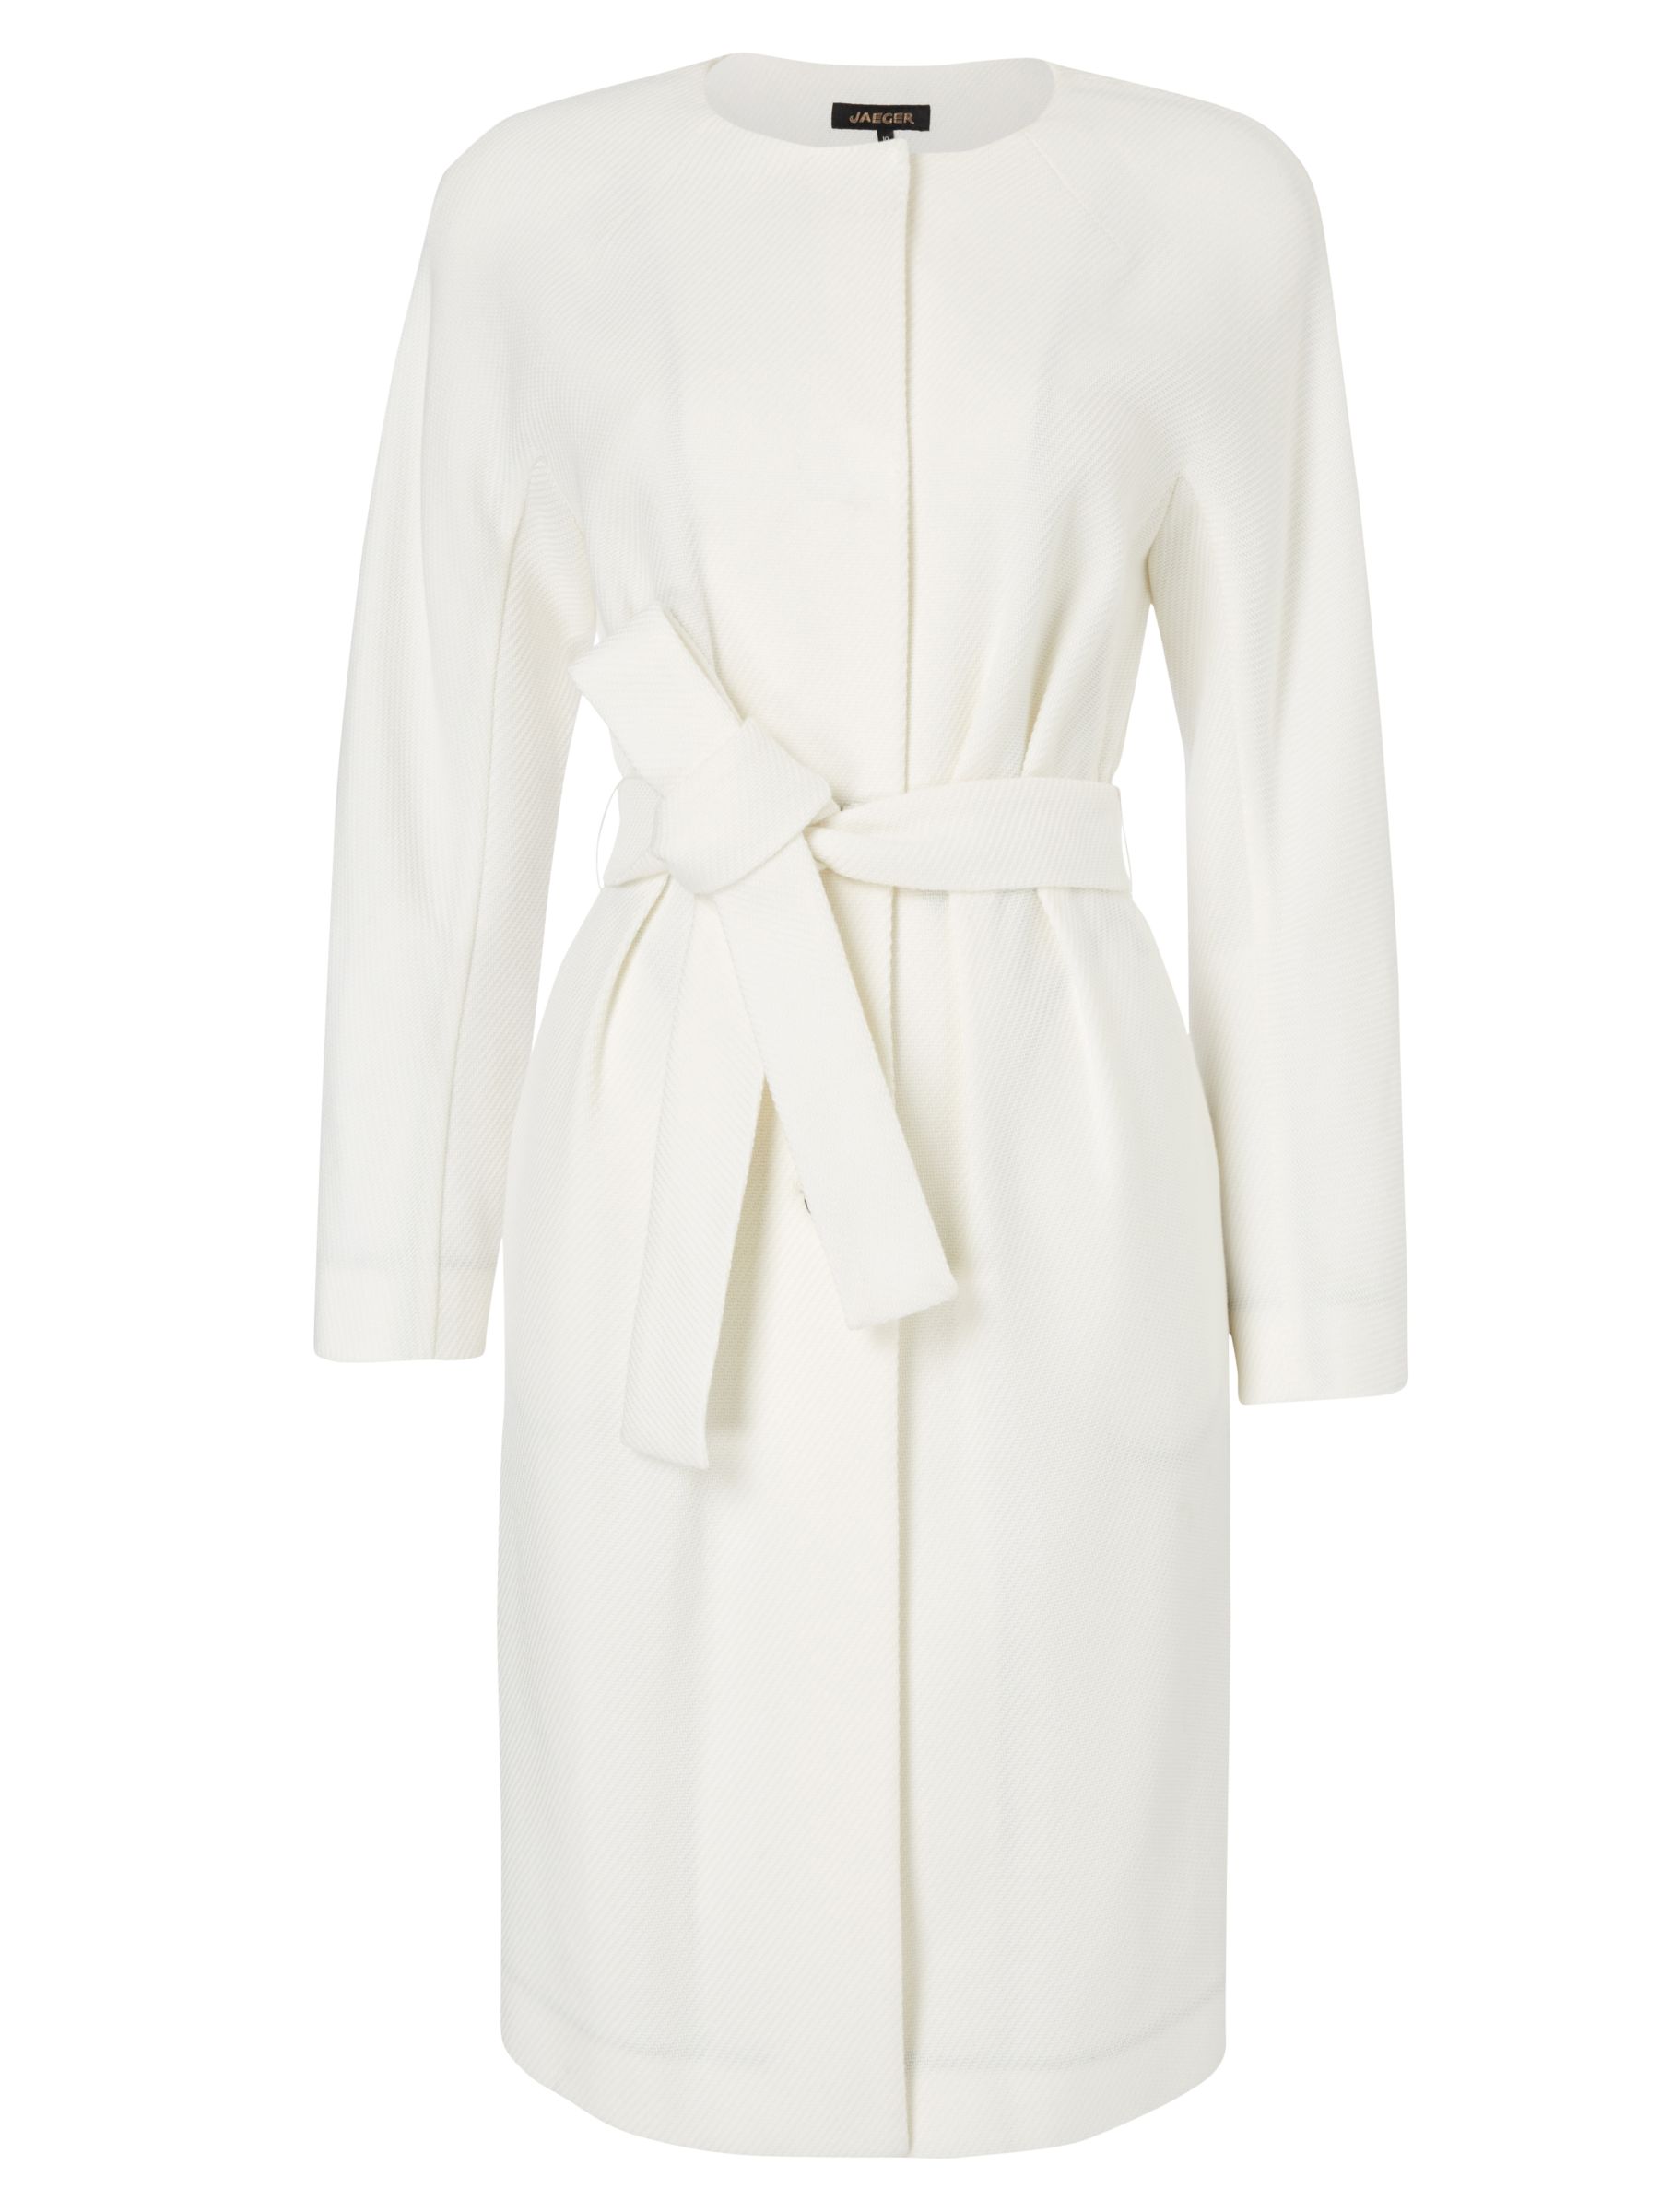 Buy Jaeger Belted Dress Coat, White Online at johnlewis.com